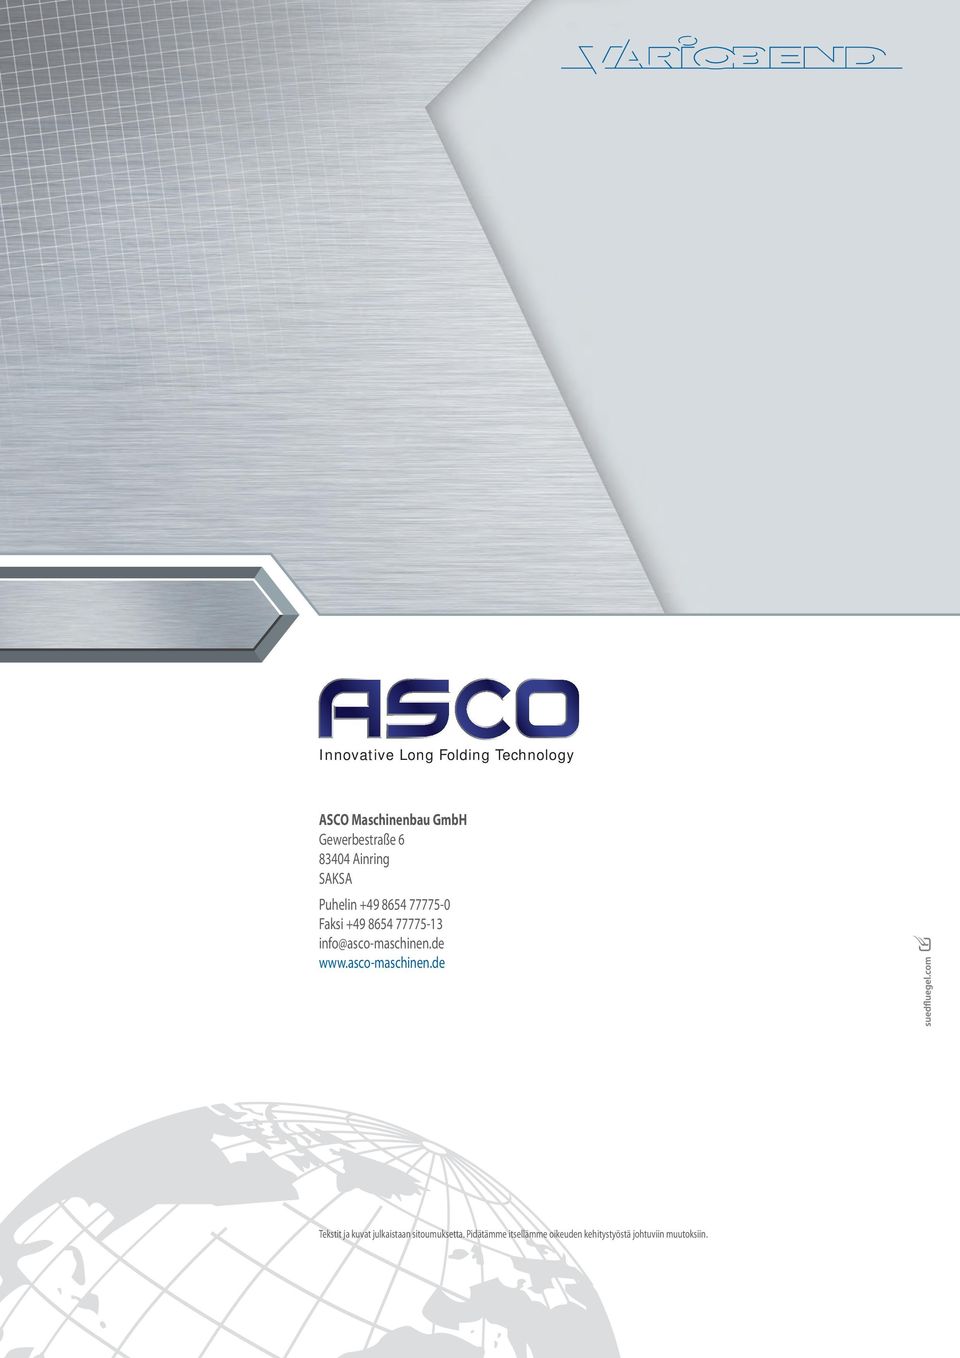 info@asco-maschinen.de www.asco-maschinen.de Tekstit ja kuvat julkaistaan sitoumuksetta.